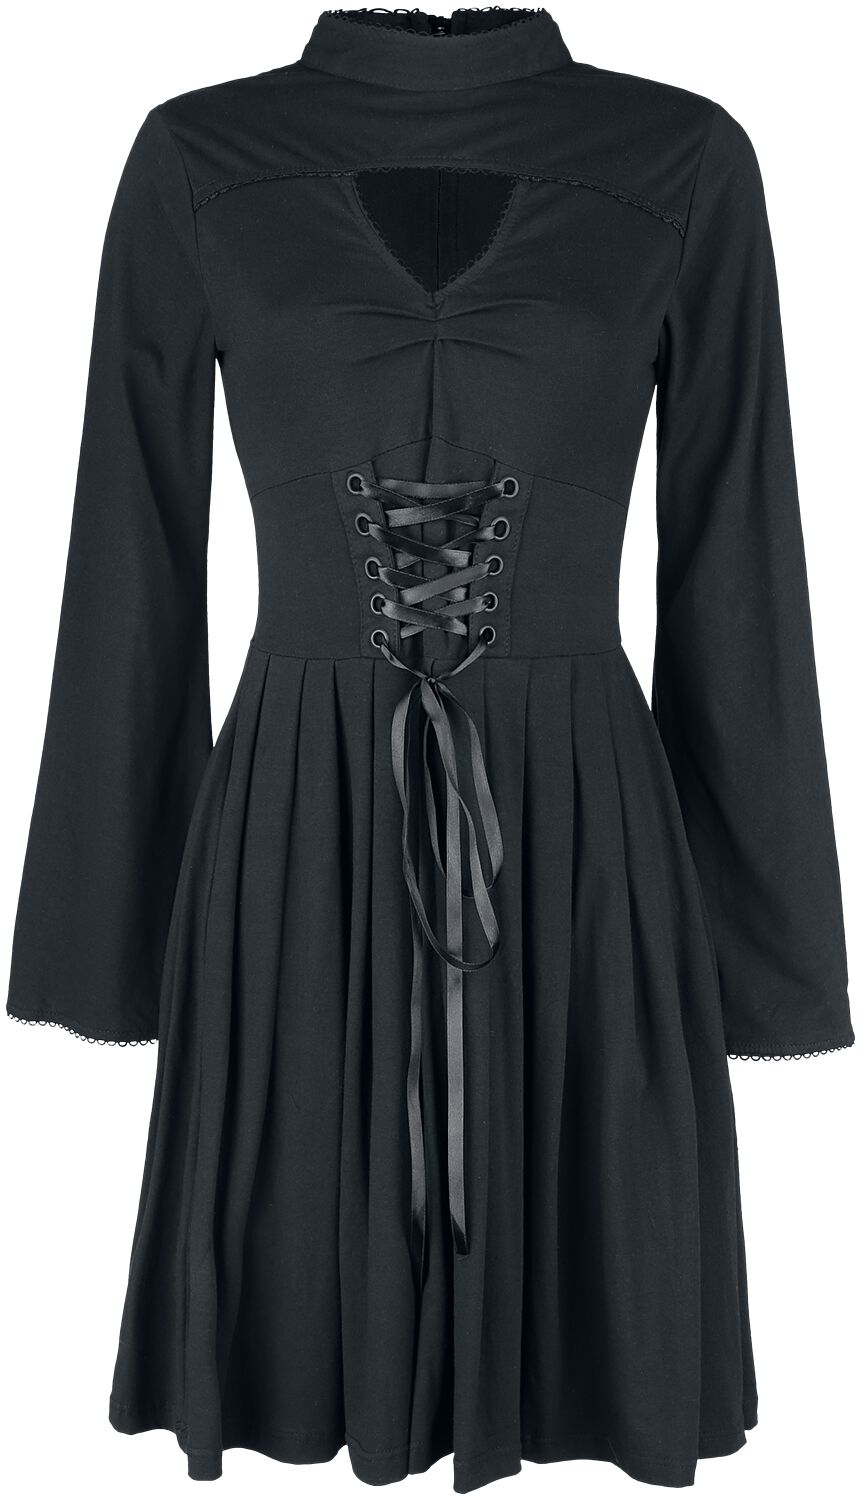 Poizen Industries - Gothic Kleid knielang - Stranger Dress - S bis 4XL - für Damen - Größe S - schwarz